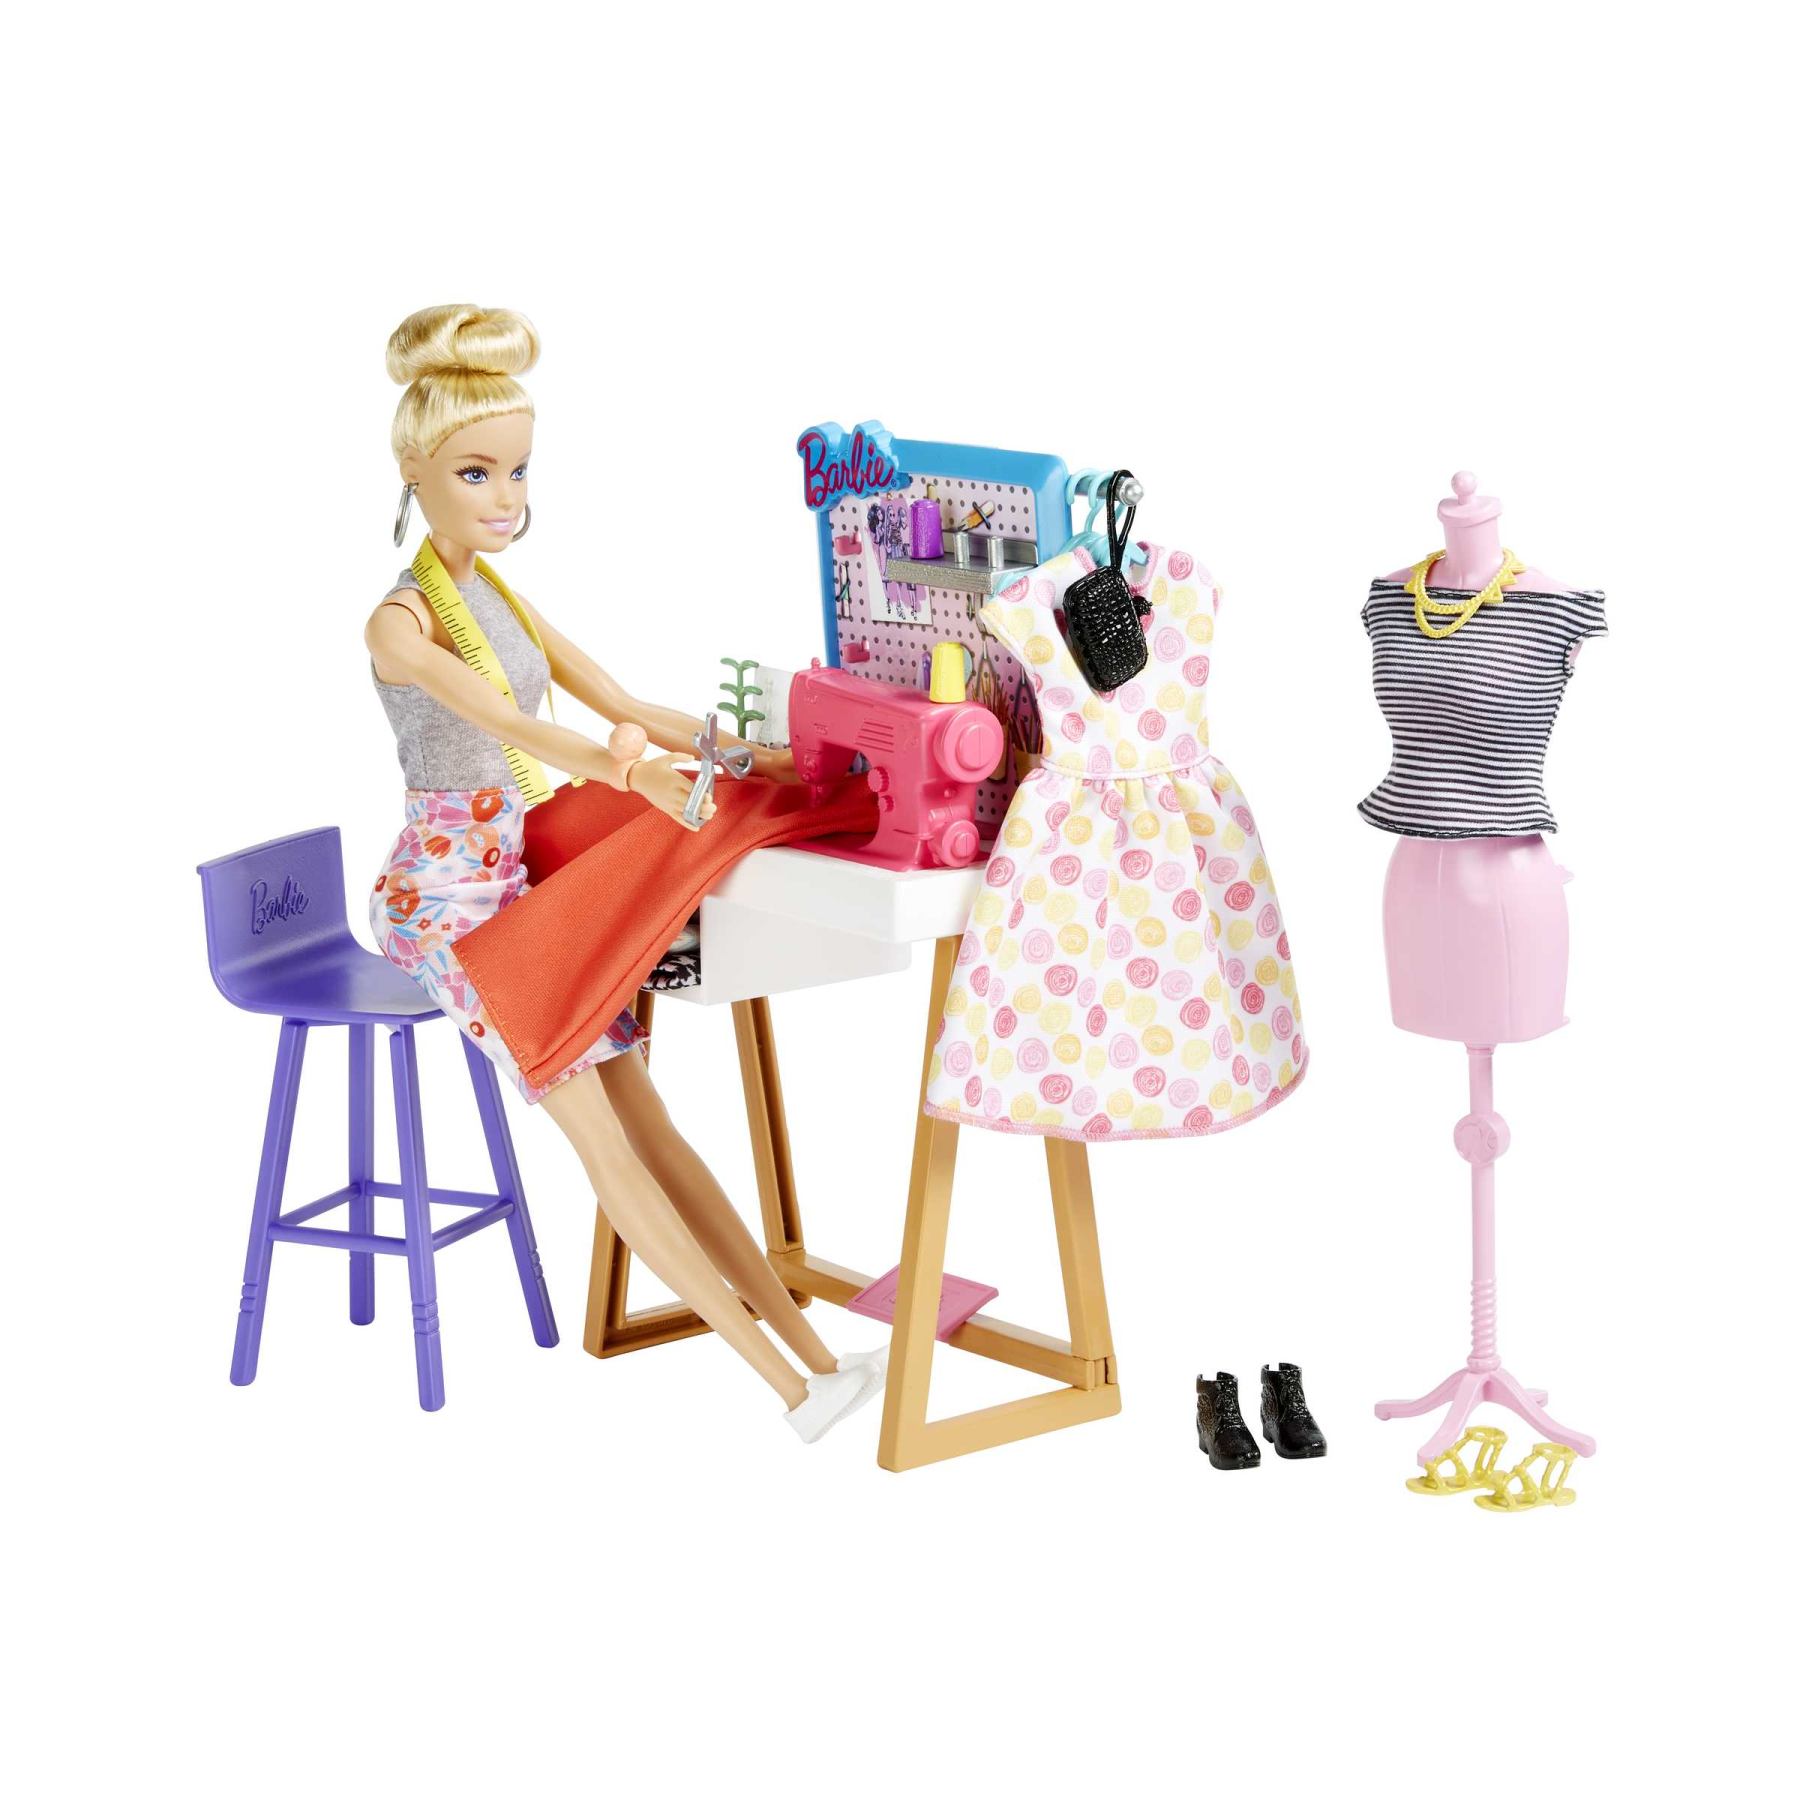 Maxi set con diario segreto e accessori Cm. 38x40 - Barbie